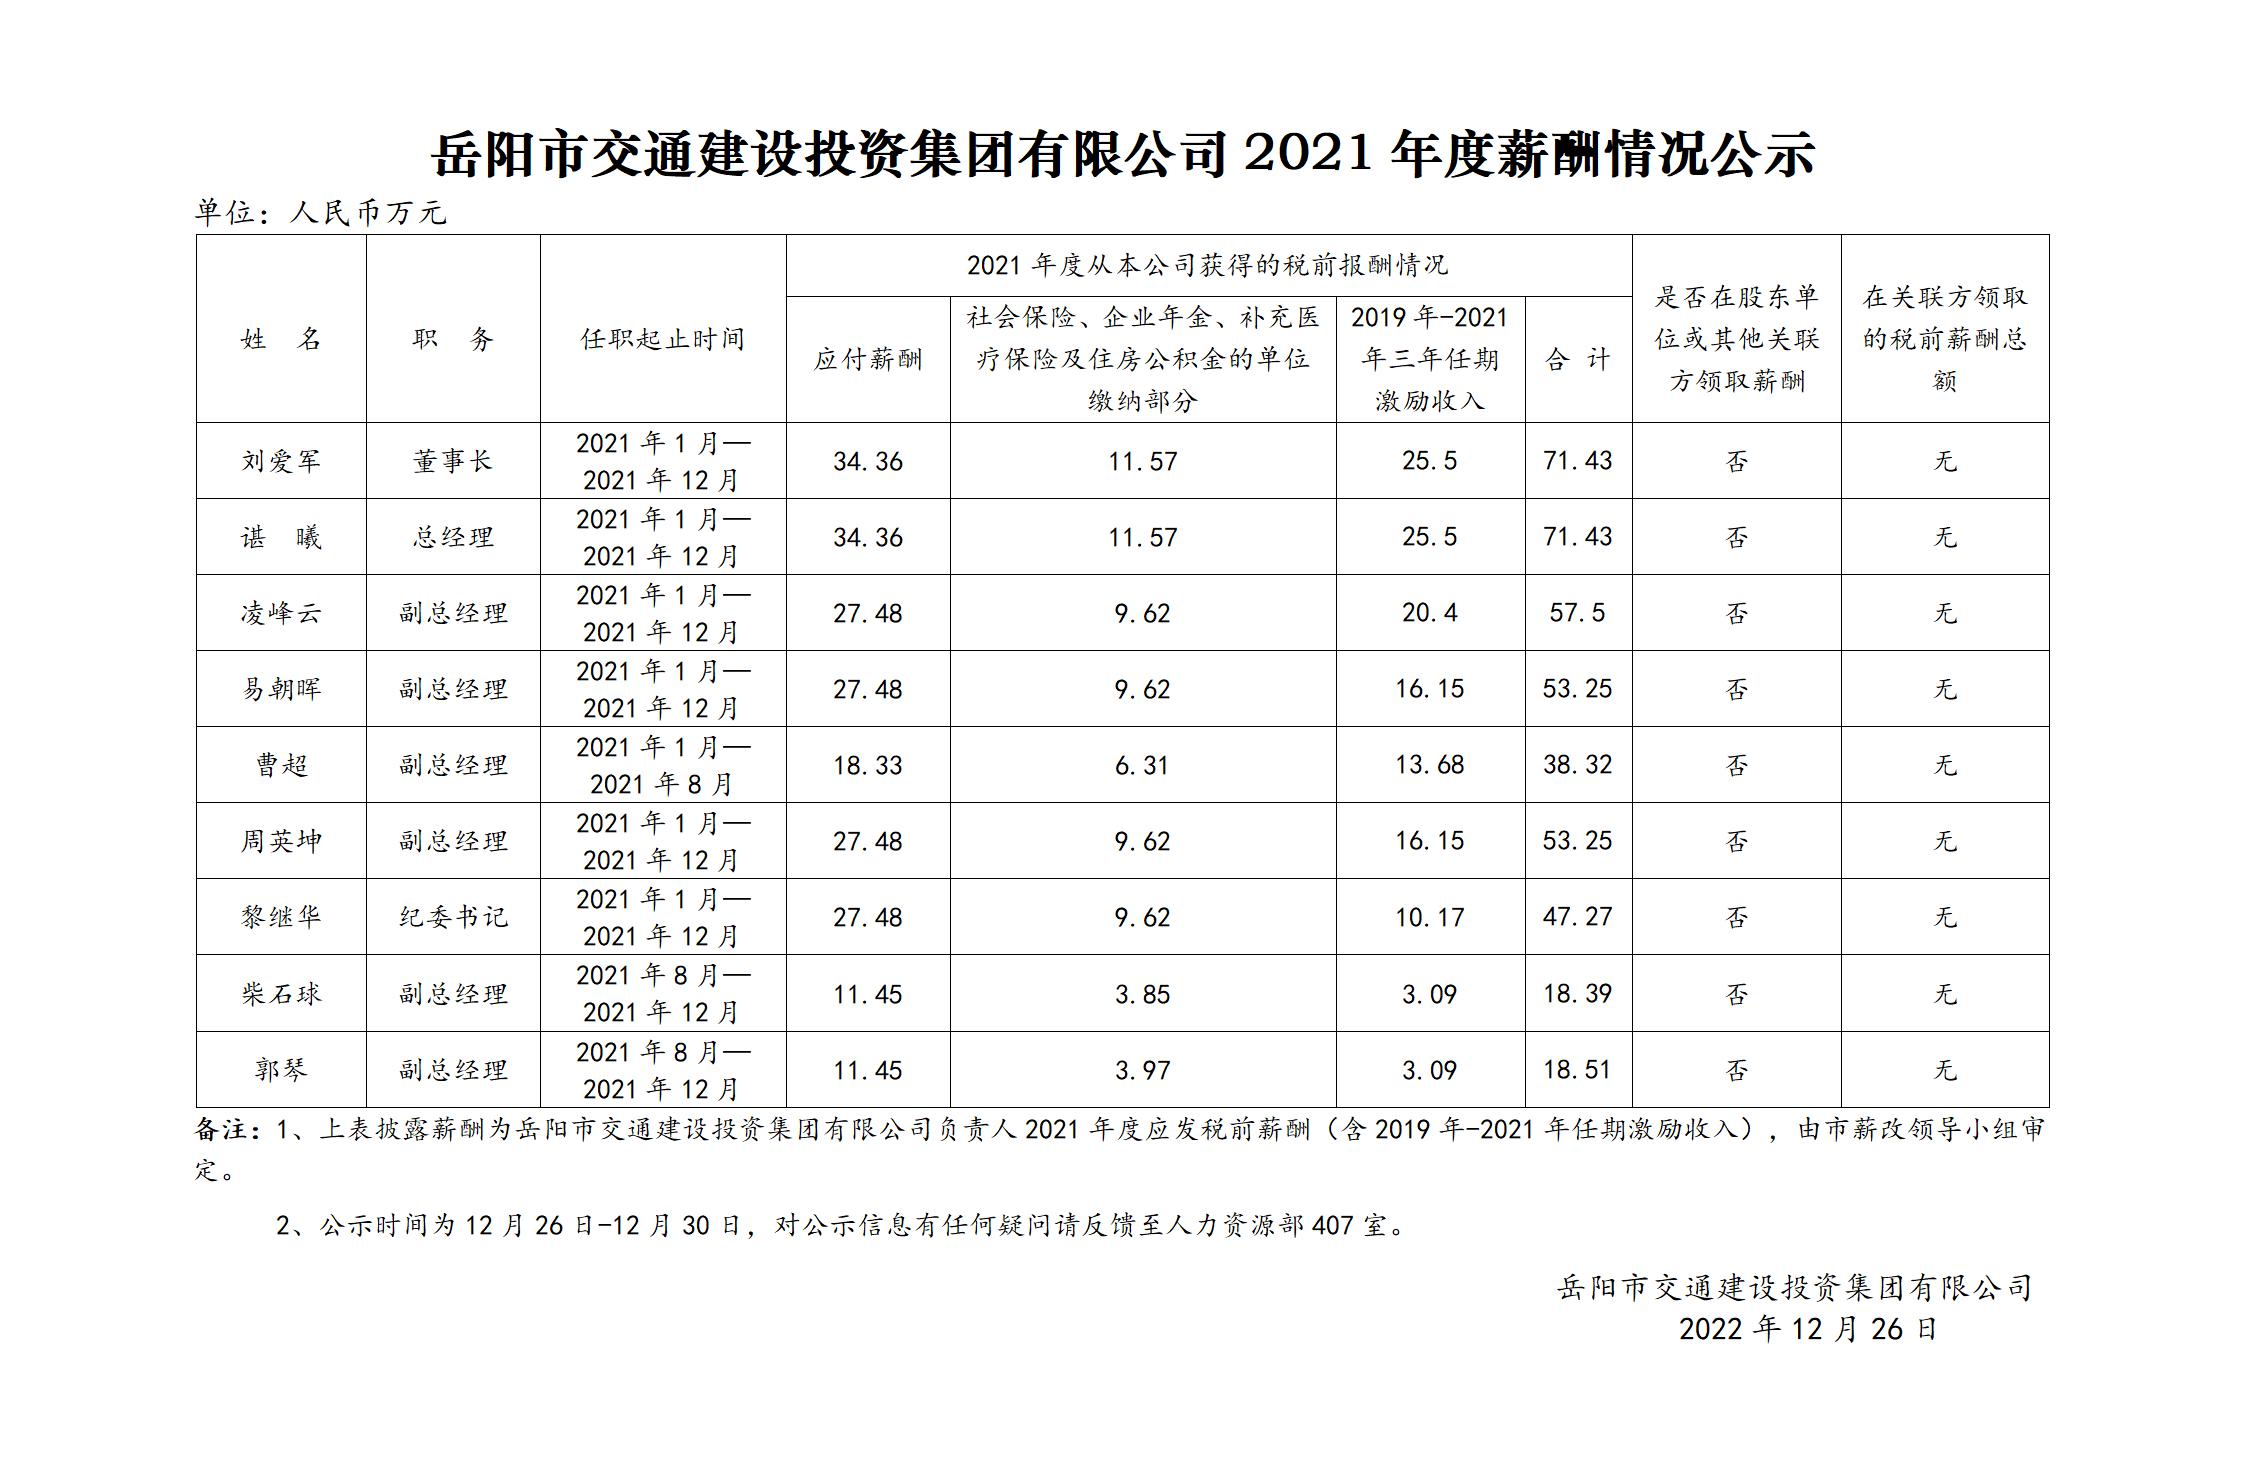 岳阳市交通建设投资集团有限公司2021年度薪酬情况公示_01.jpg